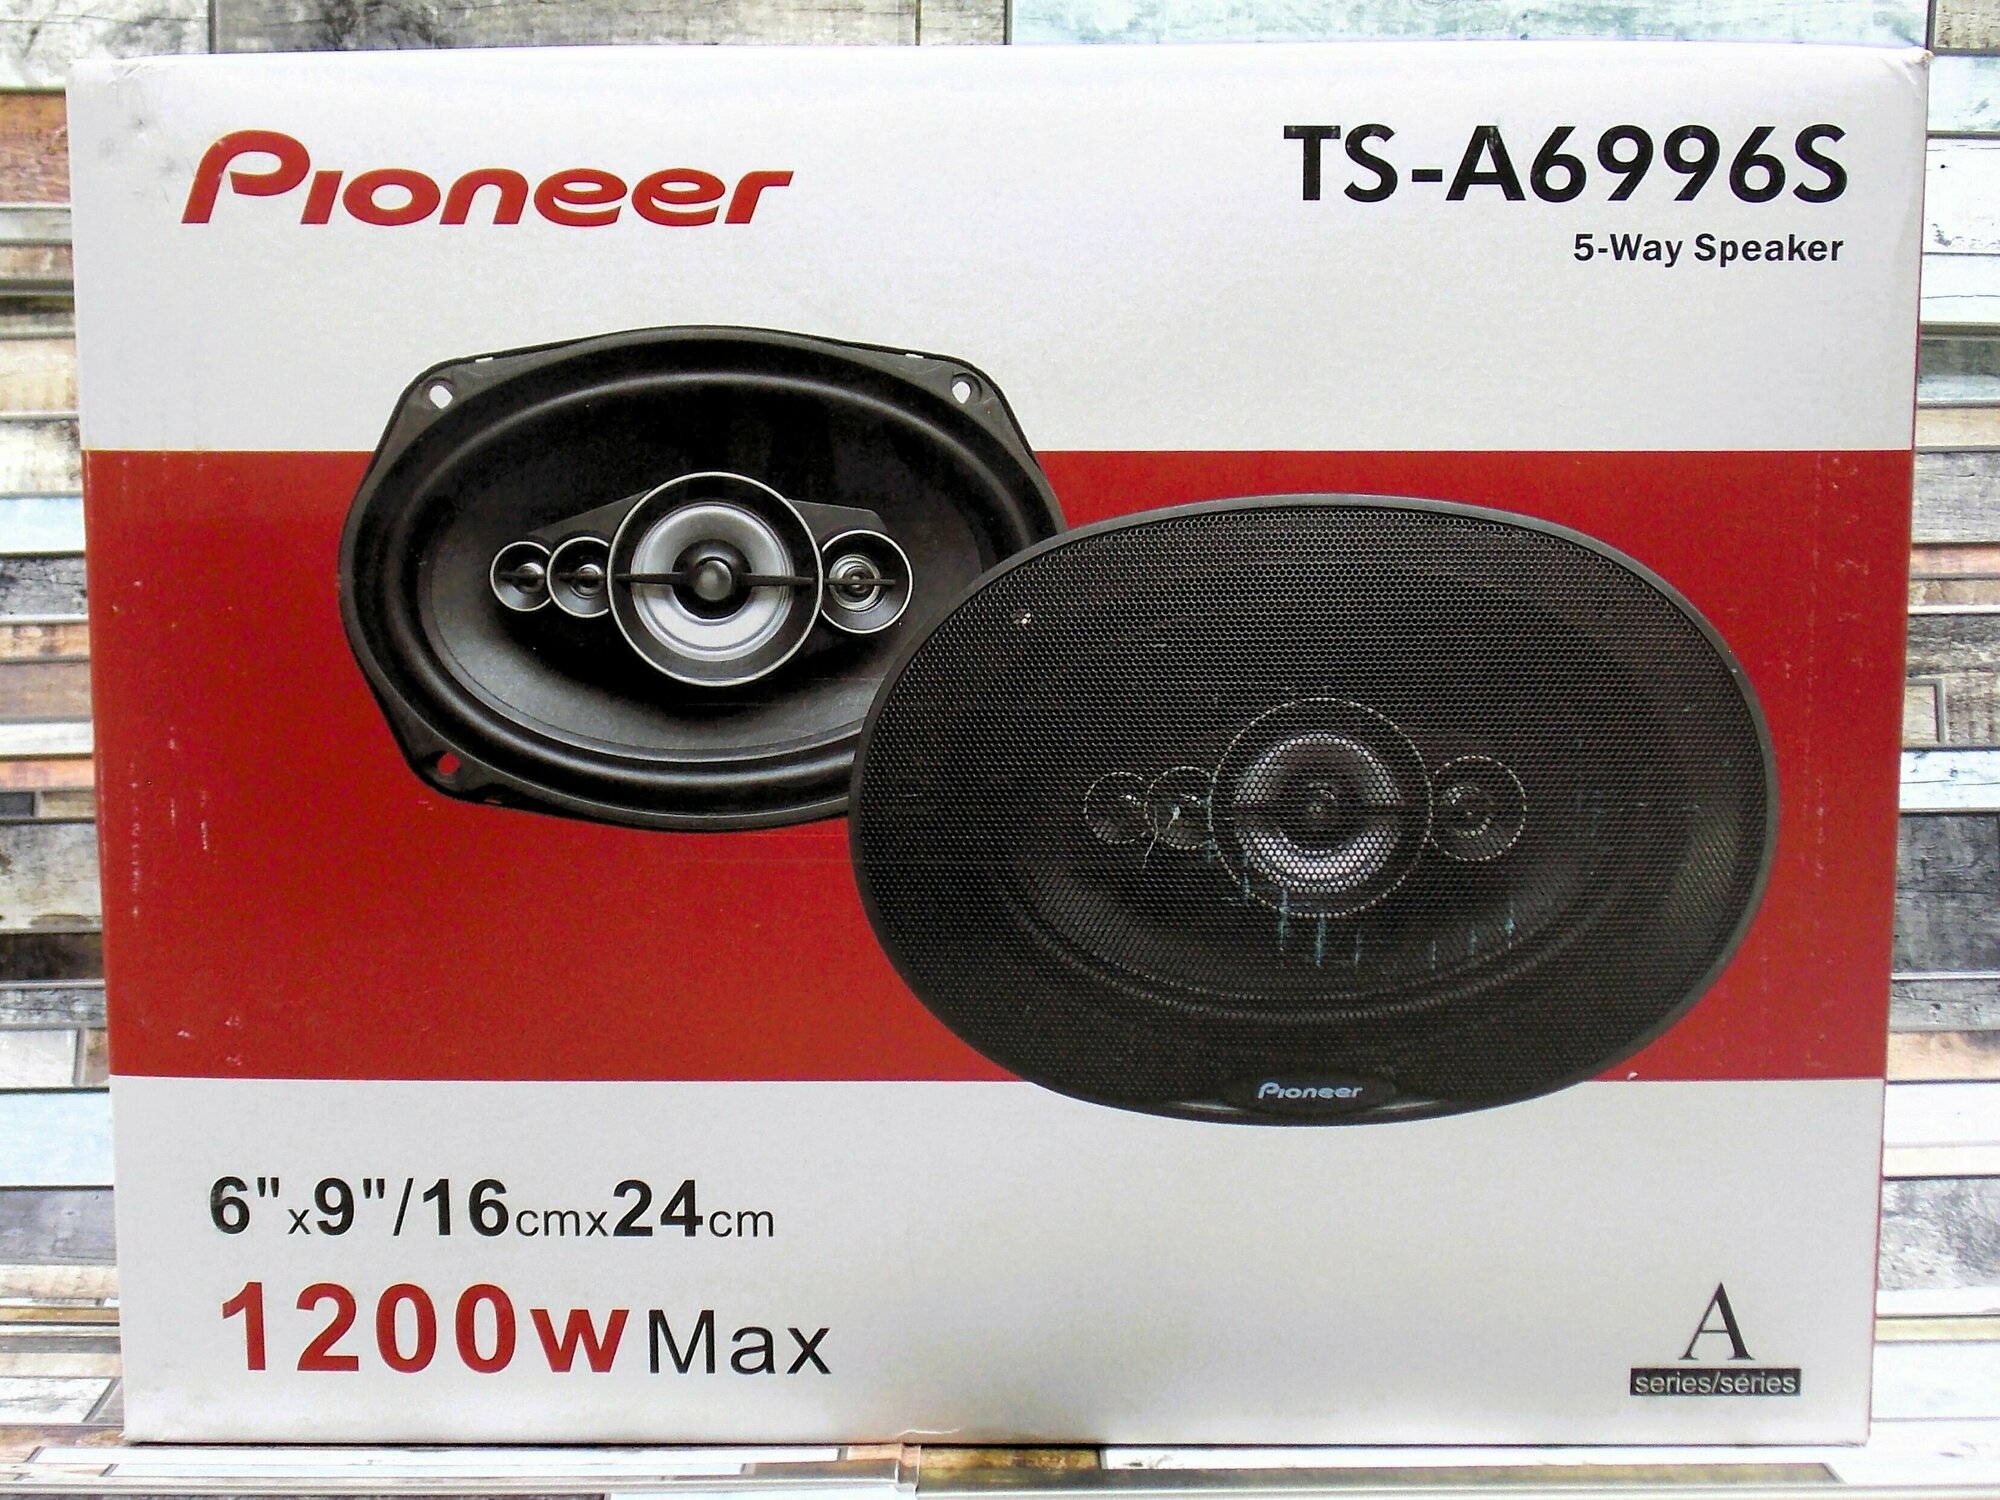 Автомобильные динамики Pioneer "TS-A6996S", Овал 16х24 См (6х9.45 Дюйм.), 1200 Вт, Комплект из 2 штук, Коаксиальная акустика 5-ти полосная, С защитными сетками